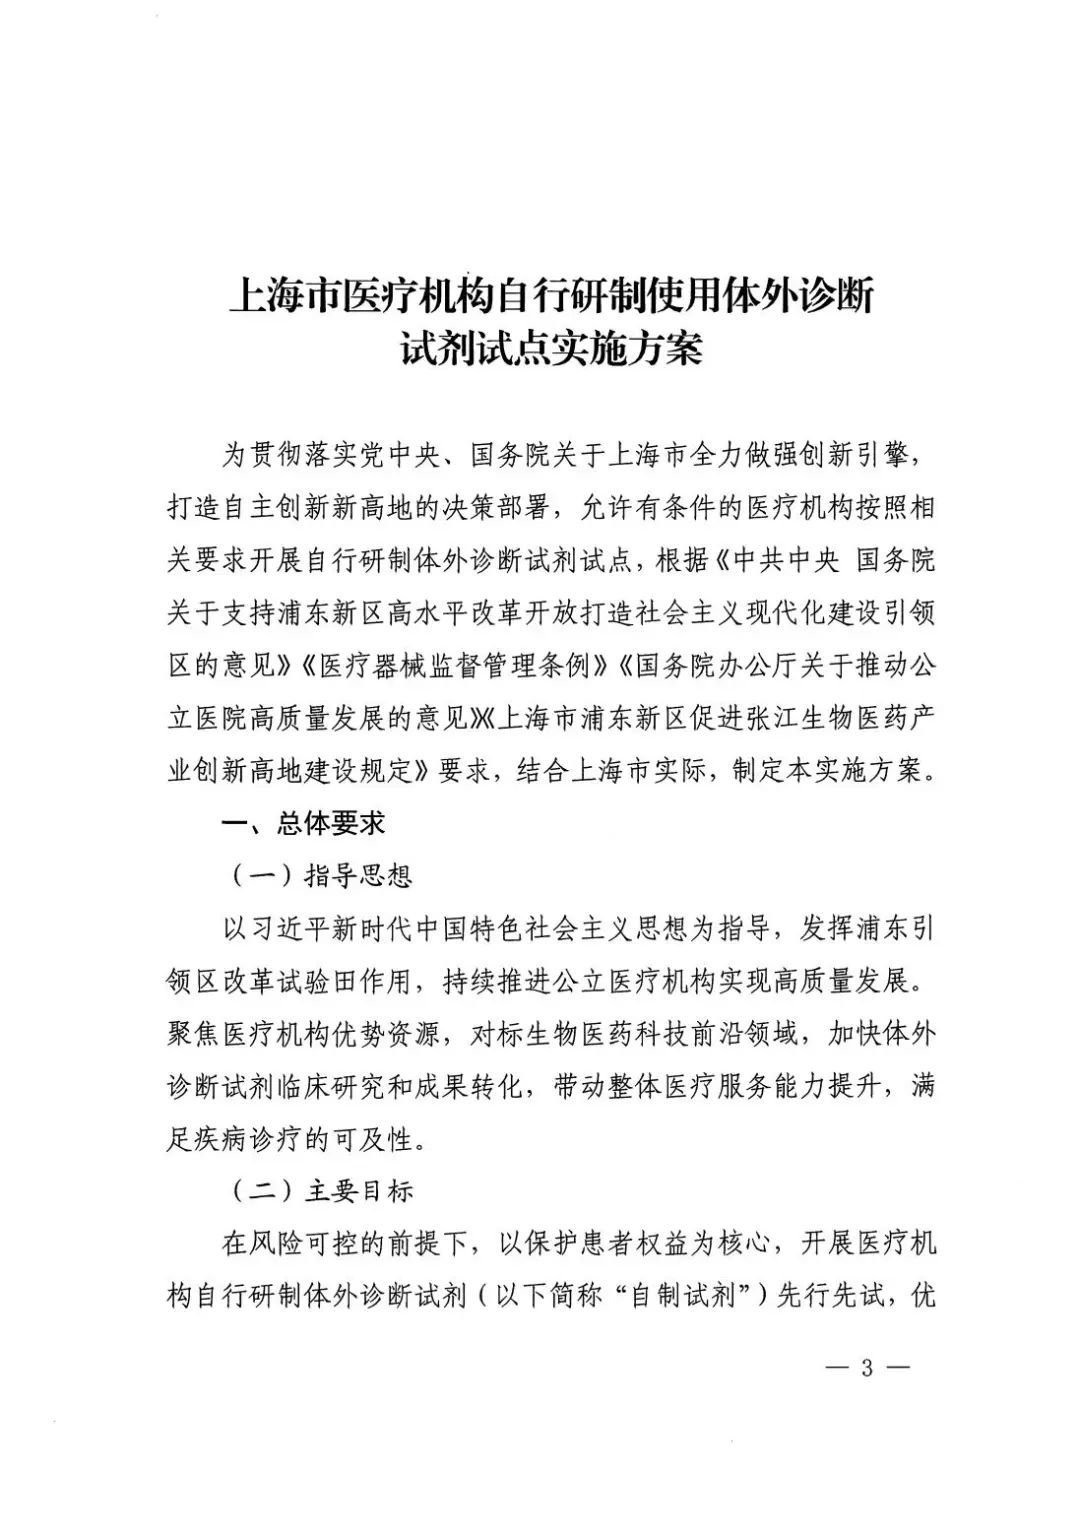 政策|上海市医疗机构自行研制使用体外诊断试剂试点实施方案